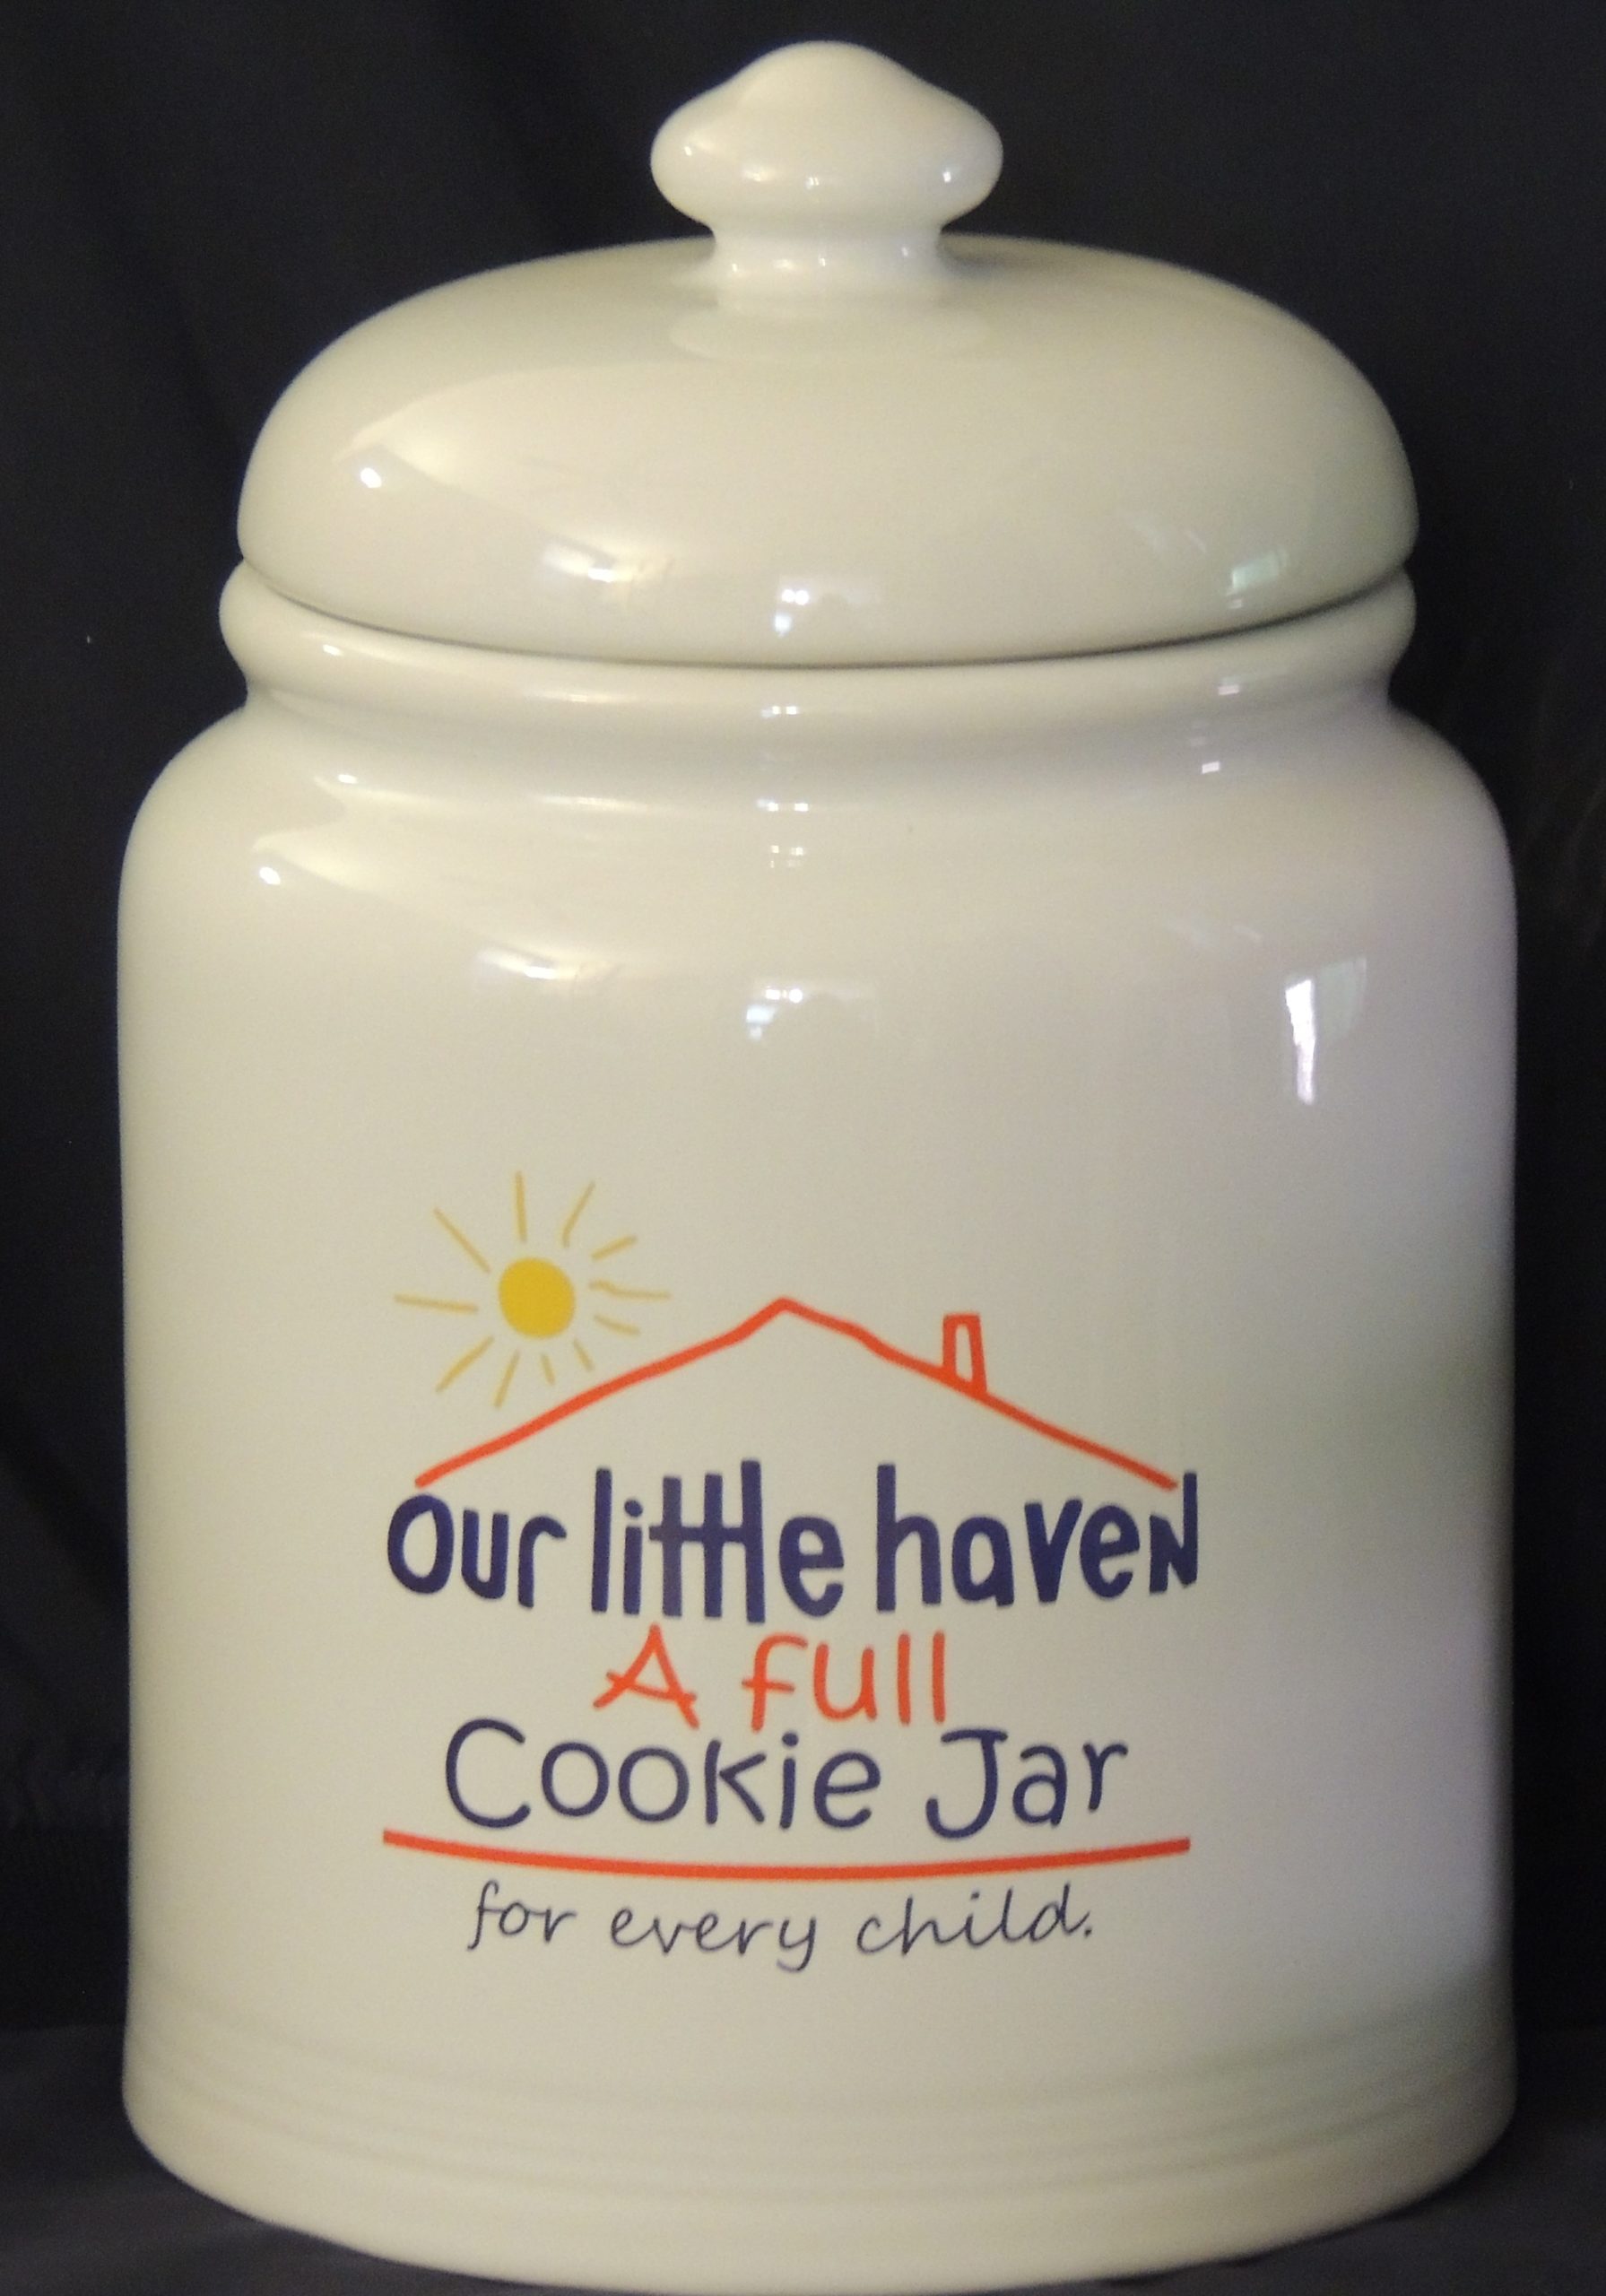 Cookie Jar - Wonderful - Crop